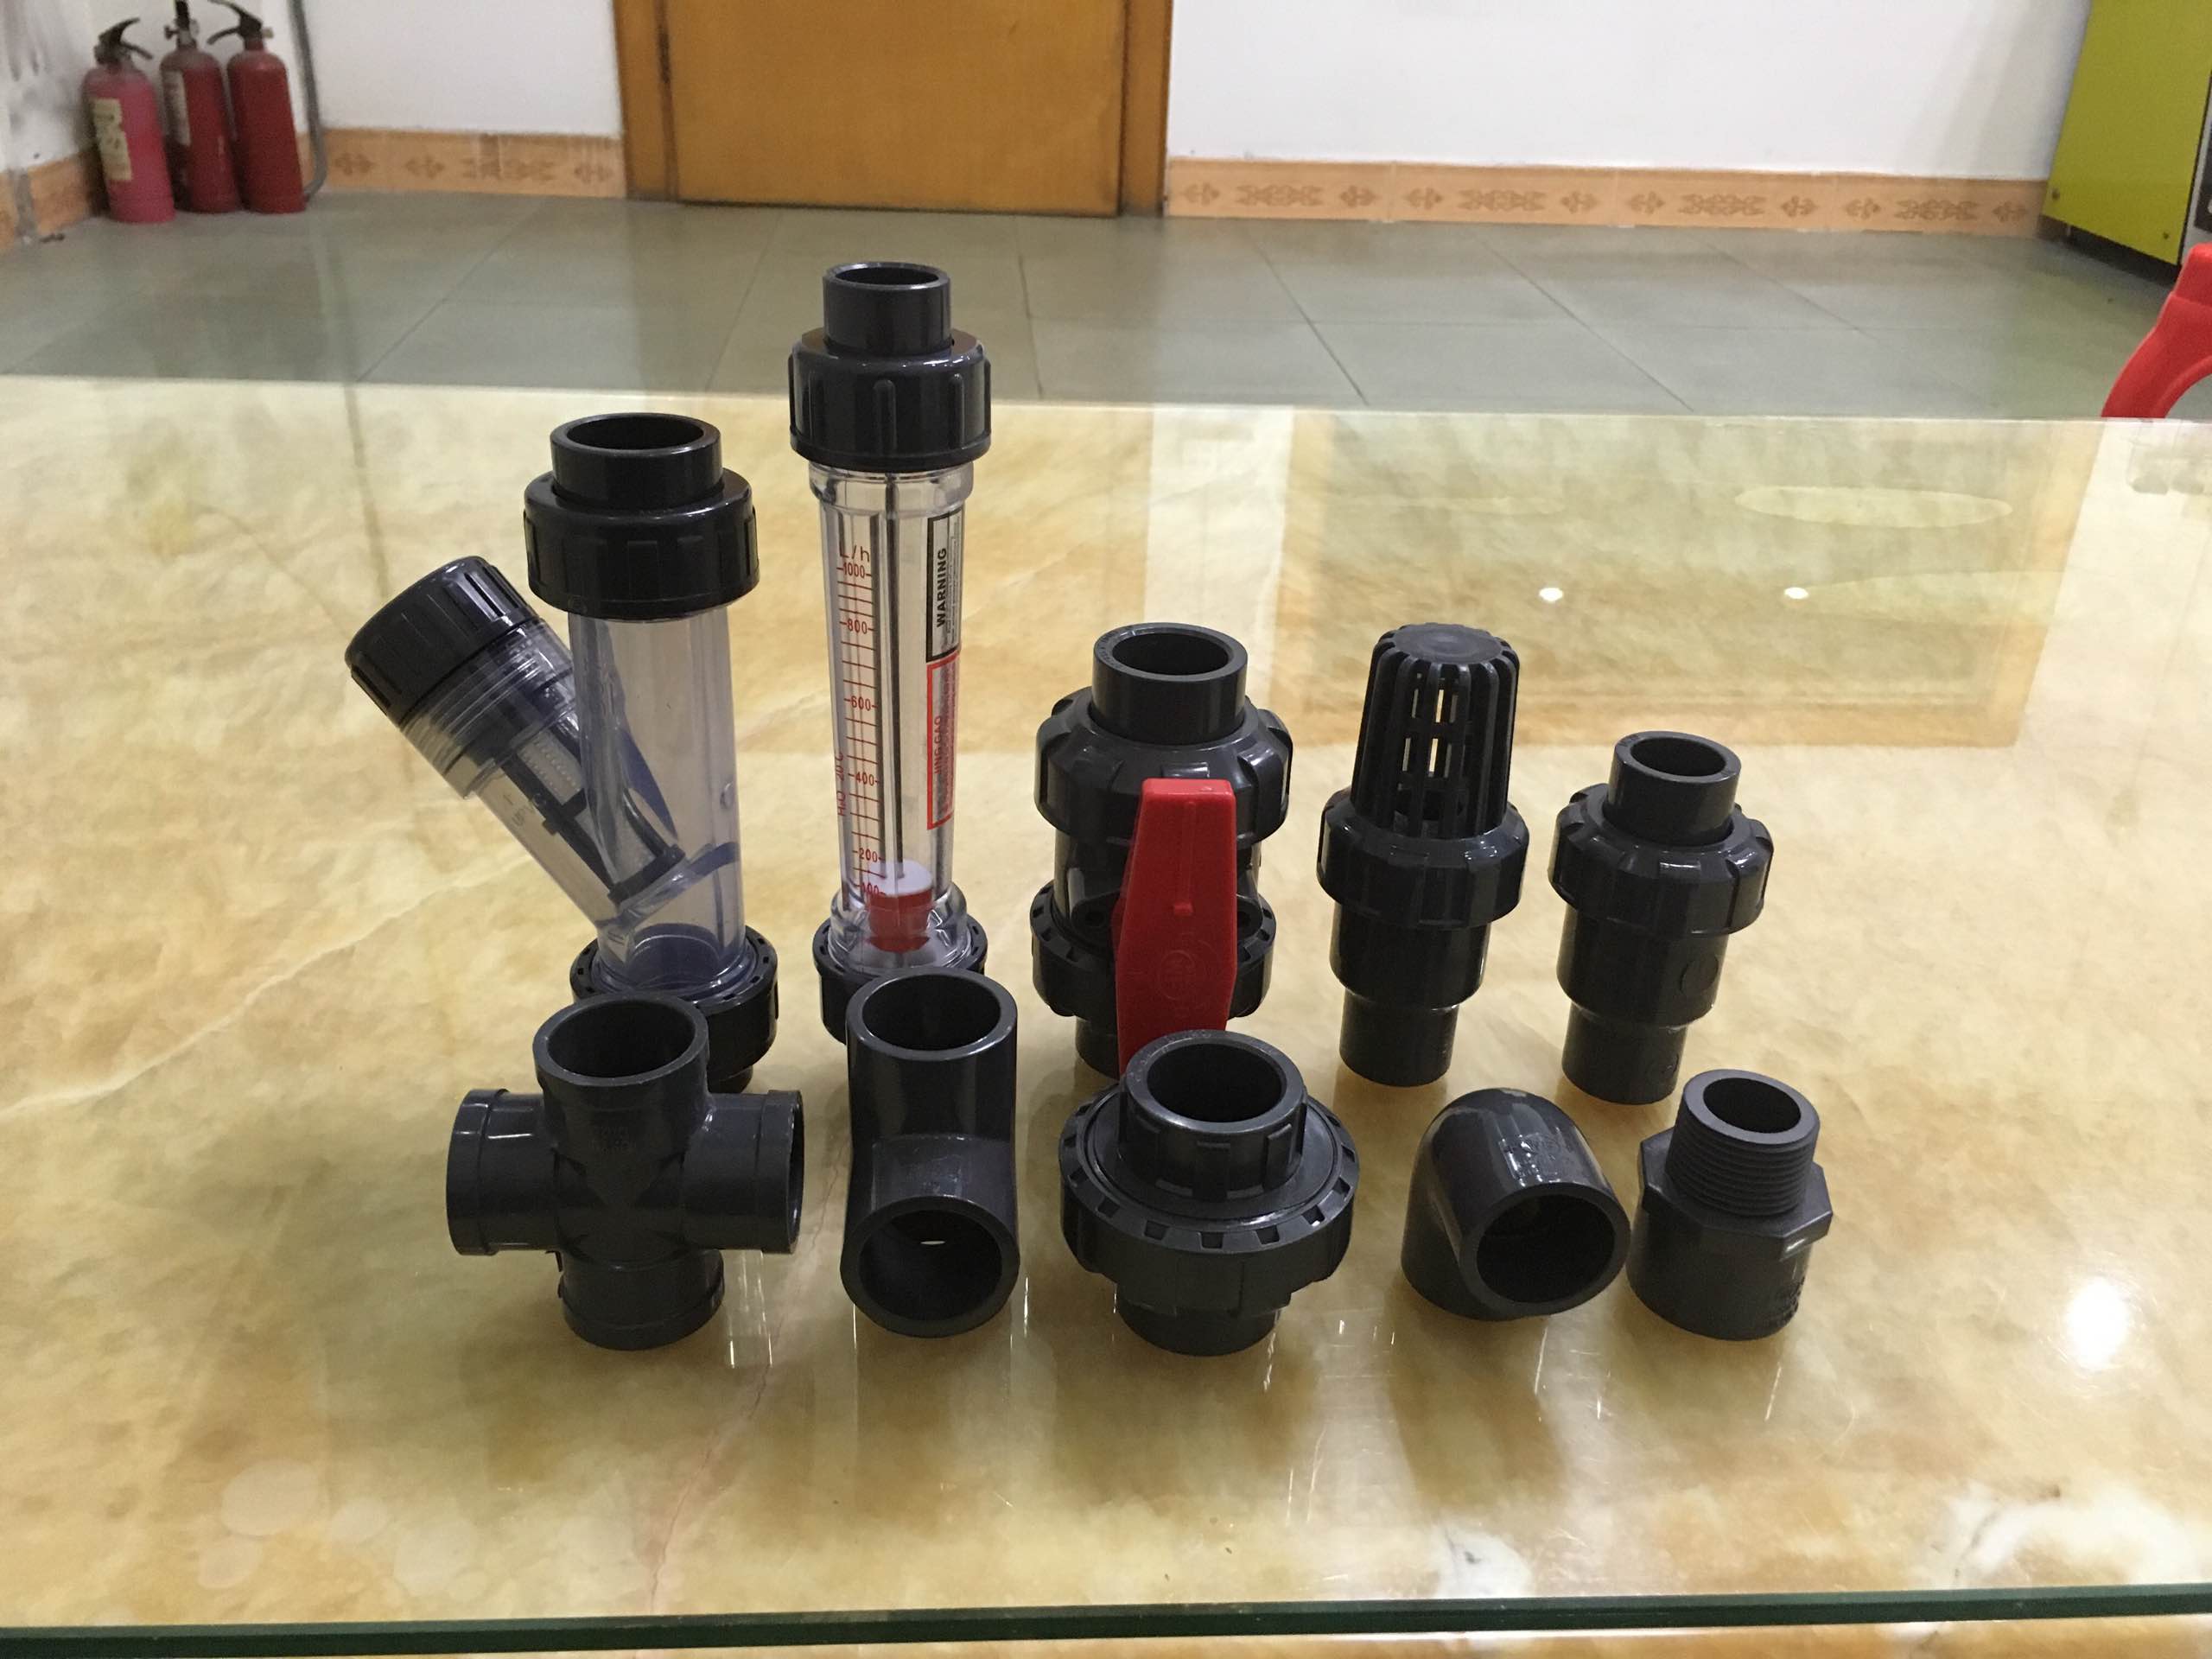 惠州南亚管,惠州南亚PVC管,惠州南亚,惠州南亚管件产品图片